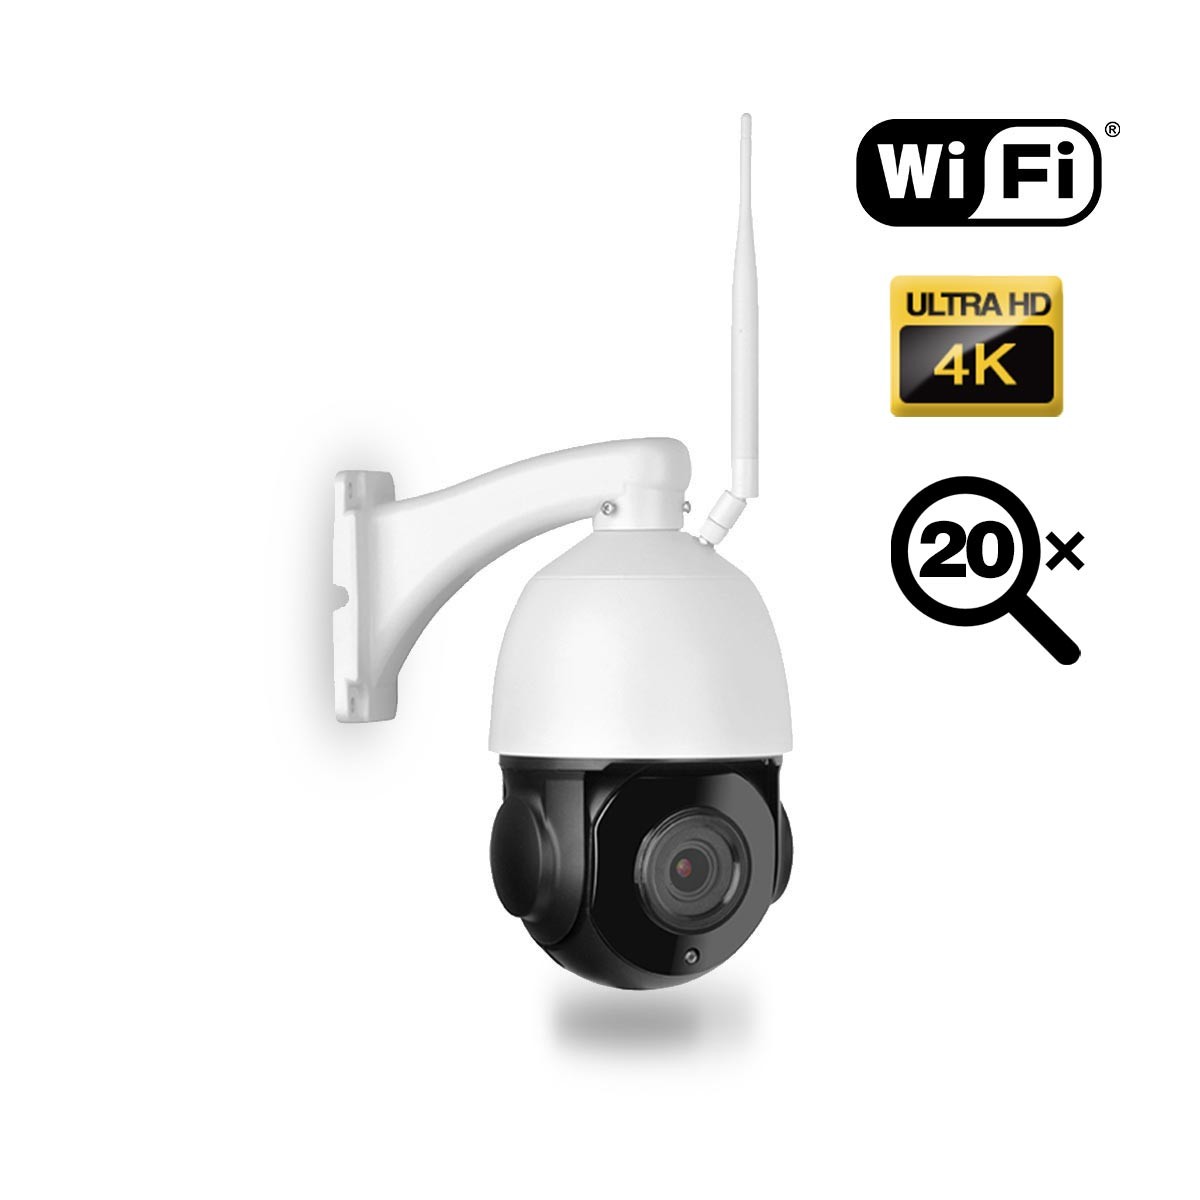 Caméra PTZ intelligente UHD 8MP IP WiFi détection audio et humaine autotracking IR Zoom X20 pilotable à distance via iPhone Android et PC